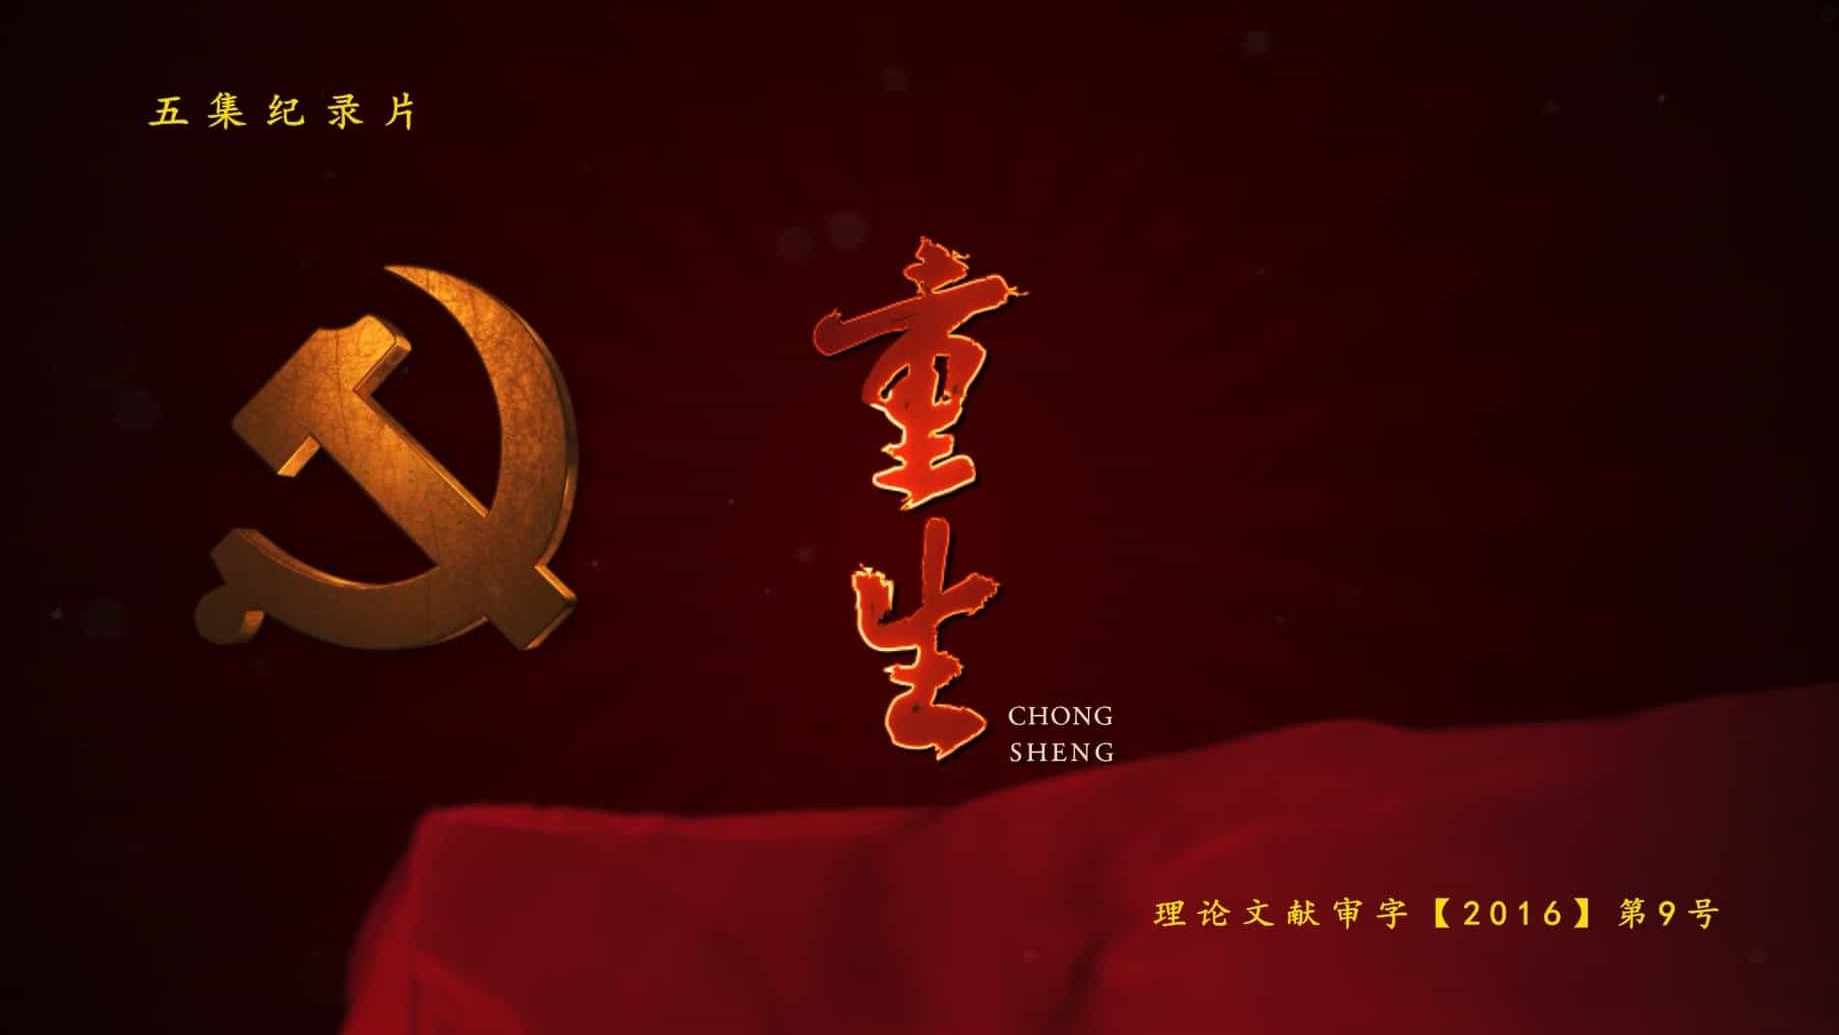 国产纪录片/党史纪录片《重生 Chong Sheng 2016》全5集 国语中字 720P高无水印网盘下载